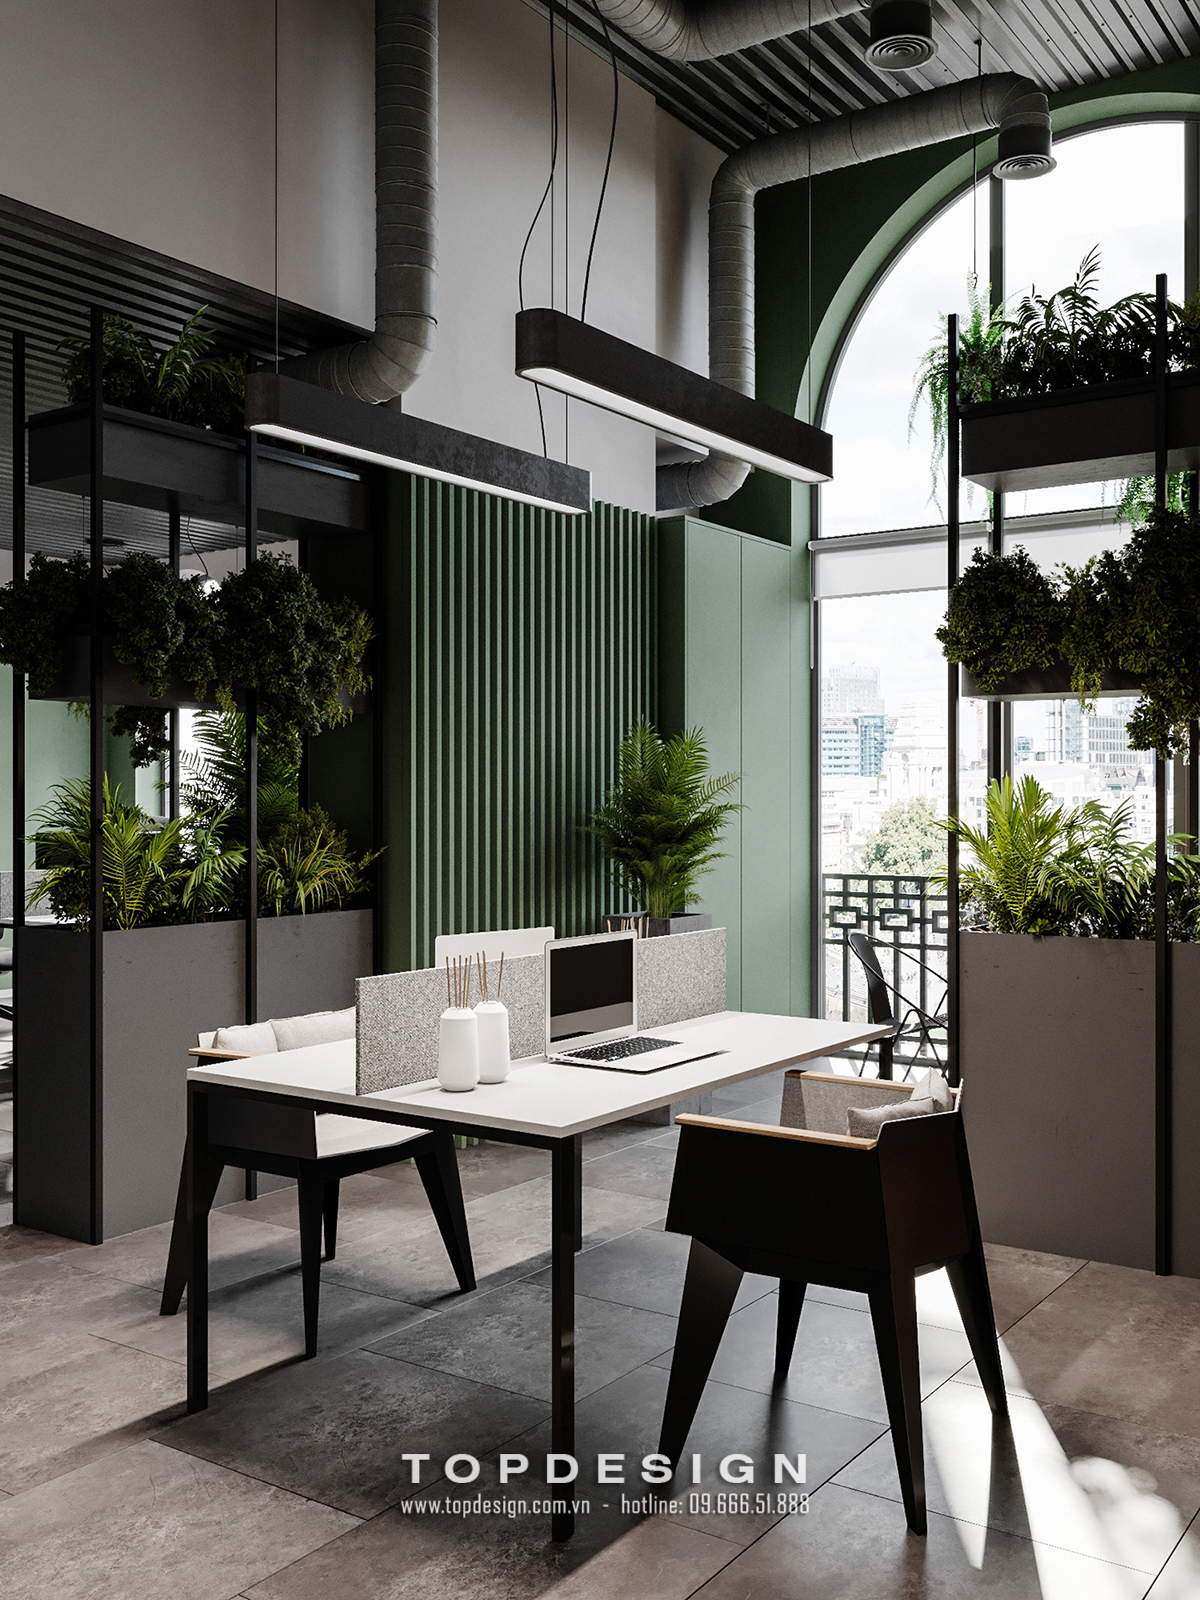 mẫu thiết kế nội thất văn phòng xanh đẹp độc đáo - TOPDESIGN 3